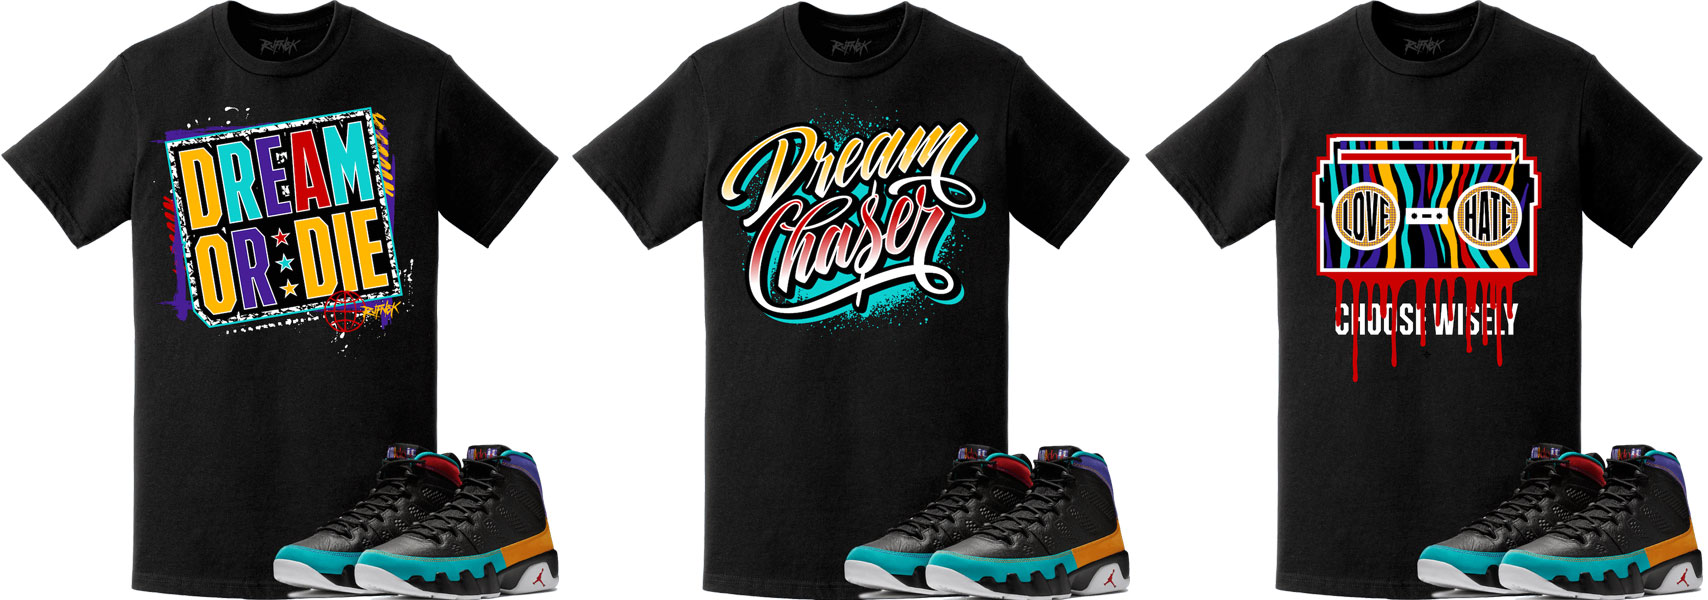 jordan 9 dream it do it shirt